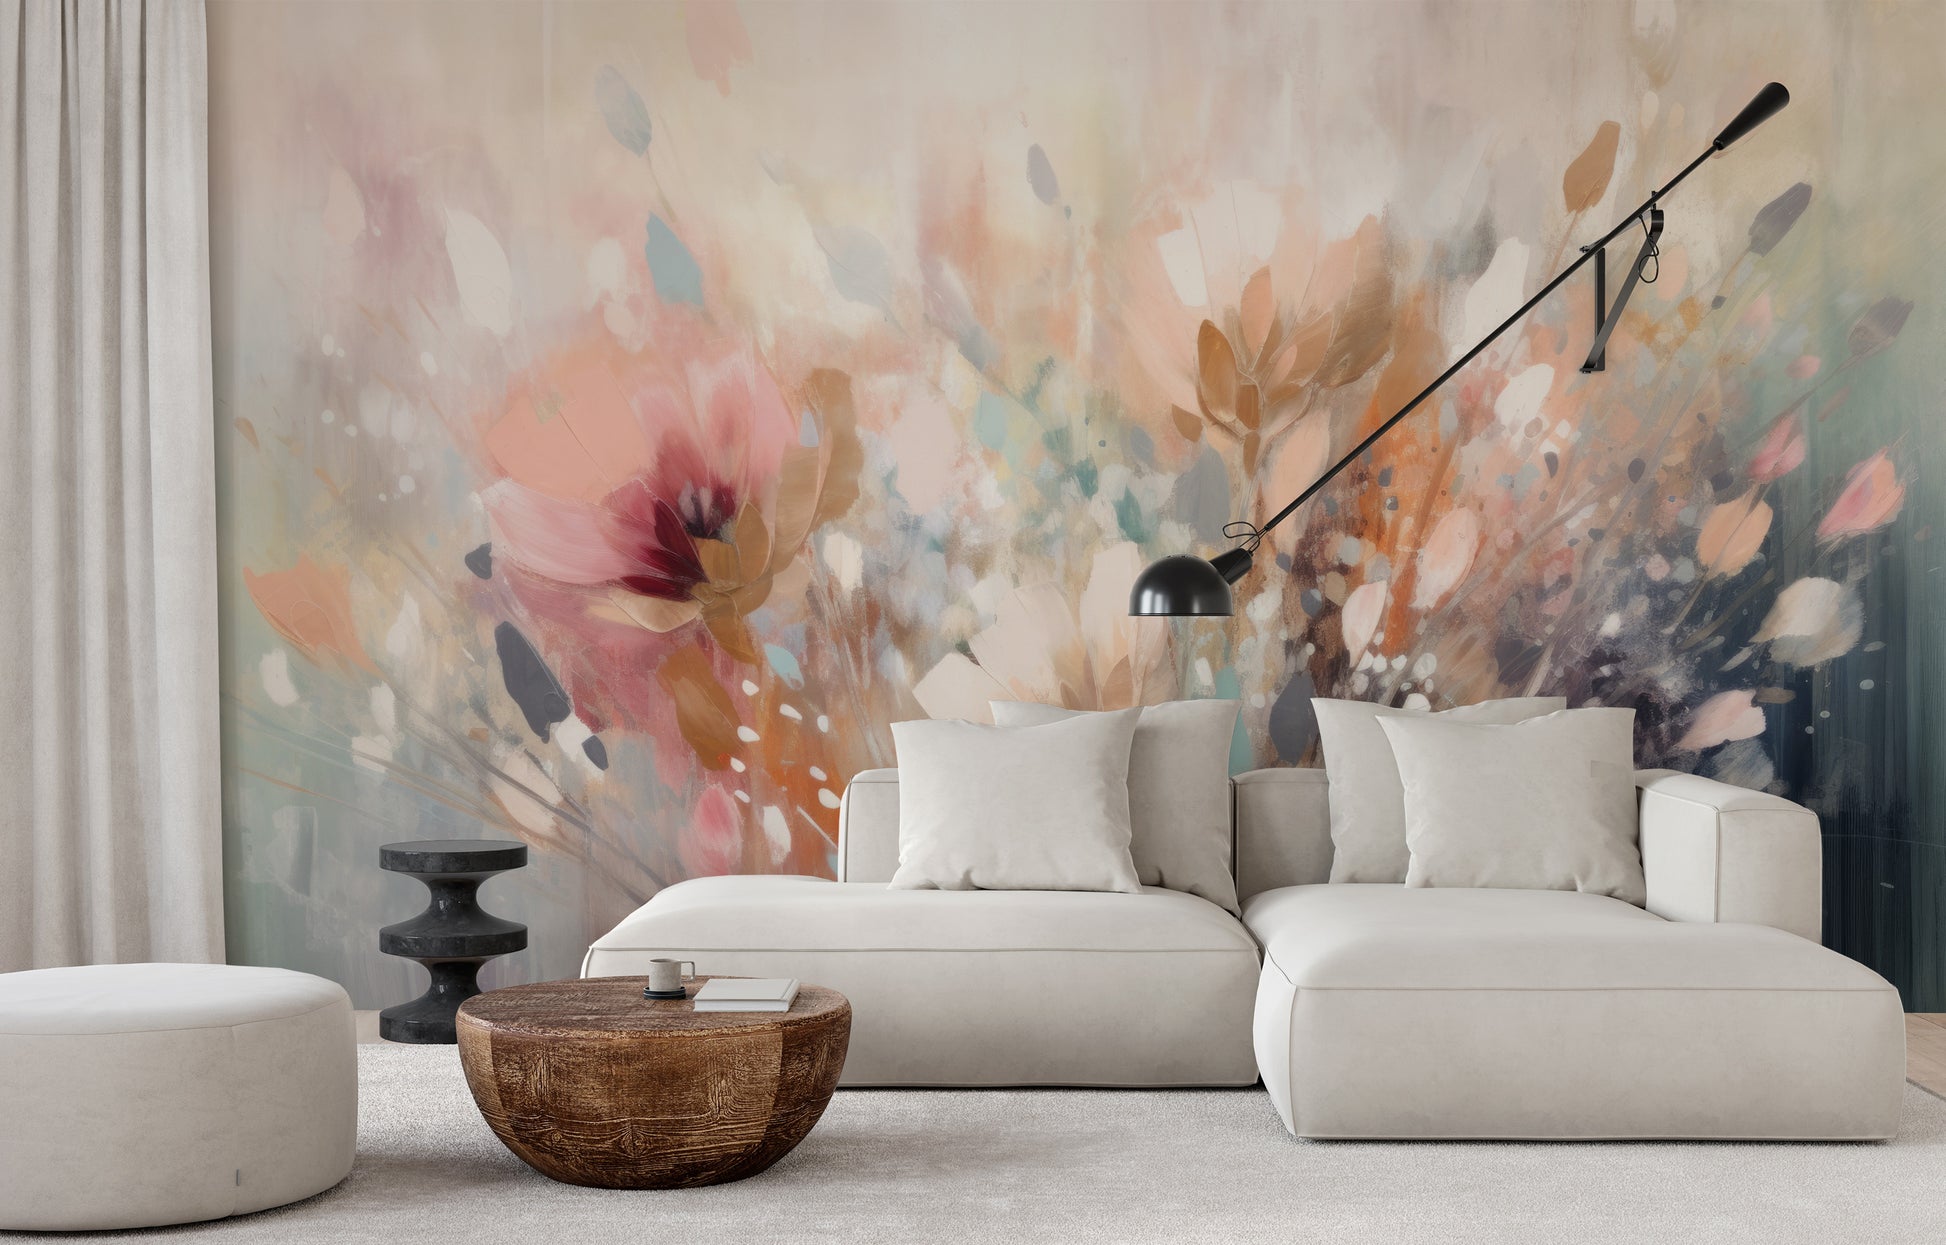 Wzór fototapety o nazwie Dreamy Floral Impression pokazanej w kontekście pomieszczenia.